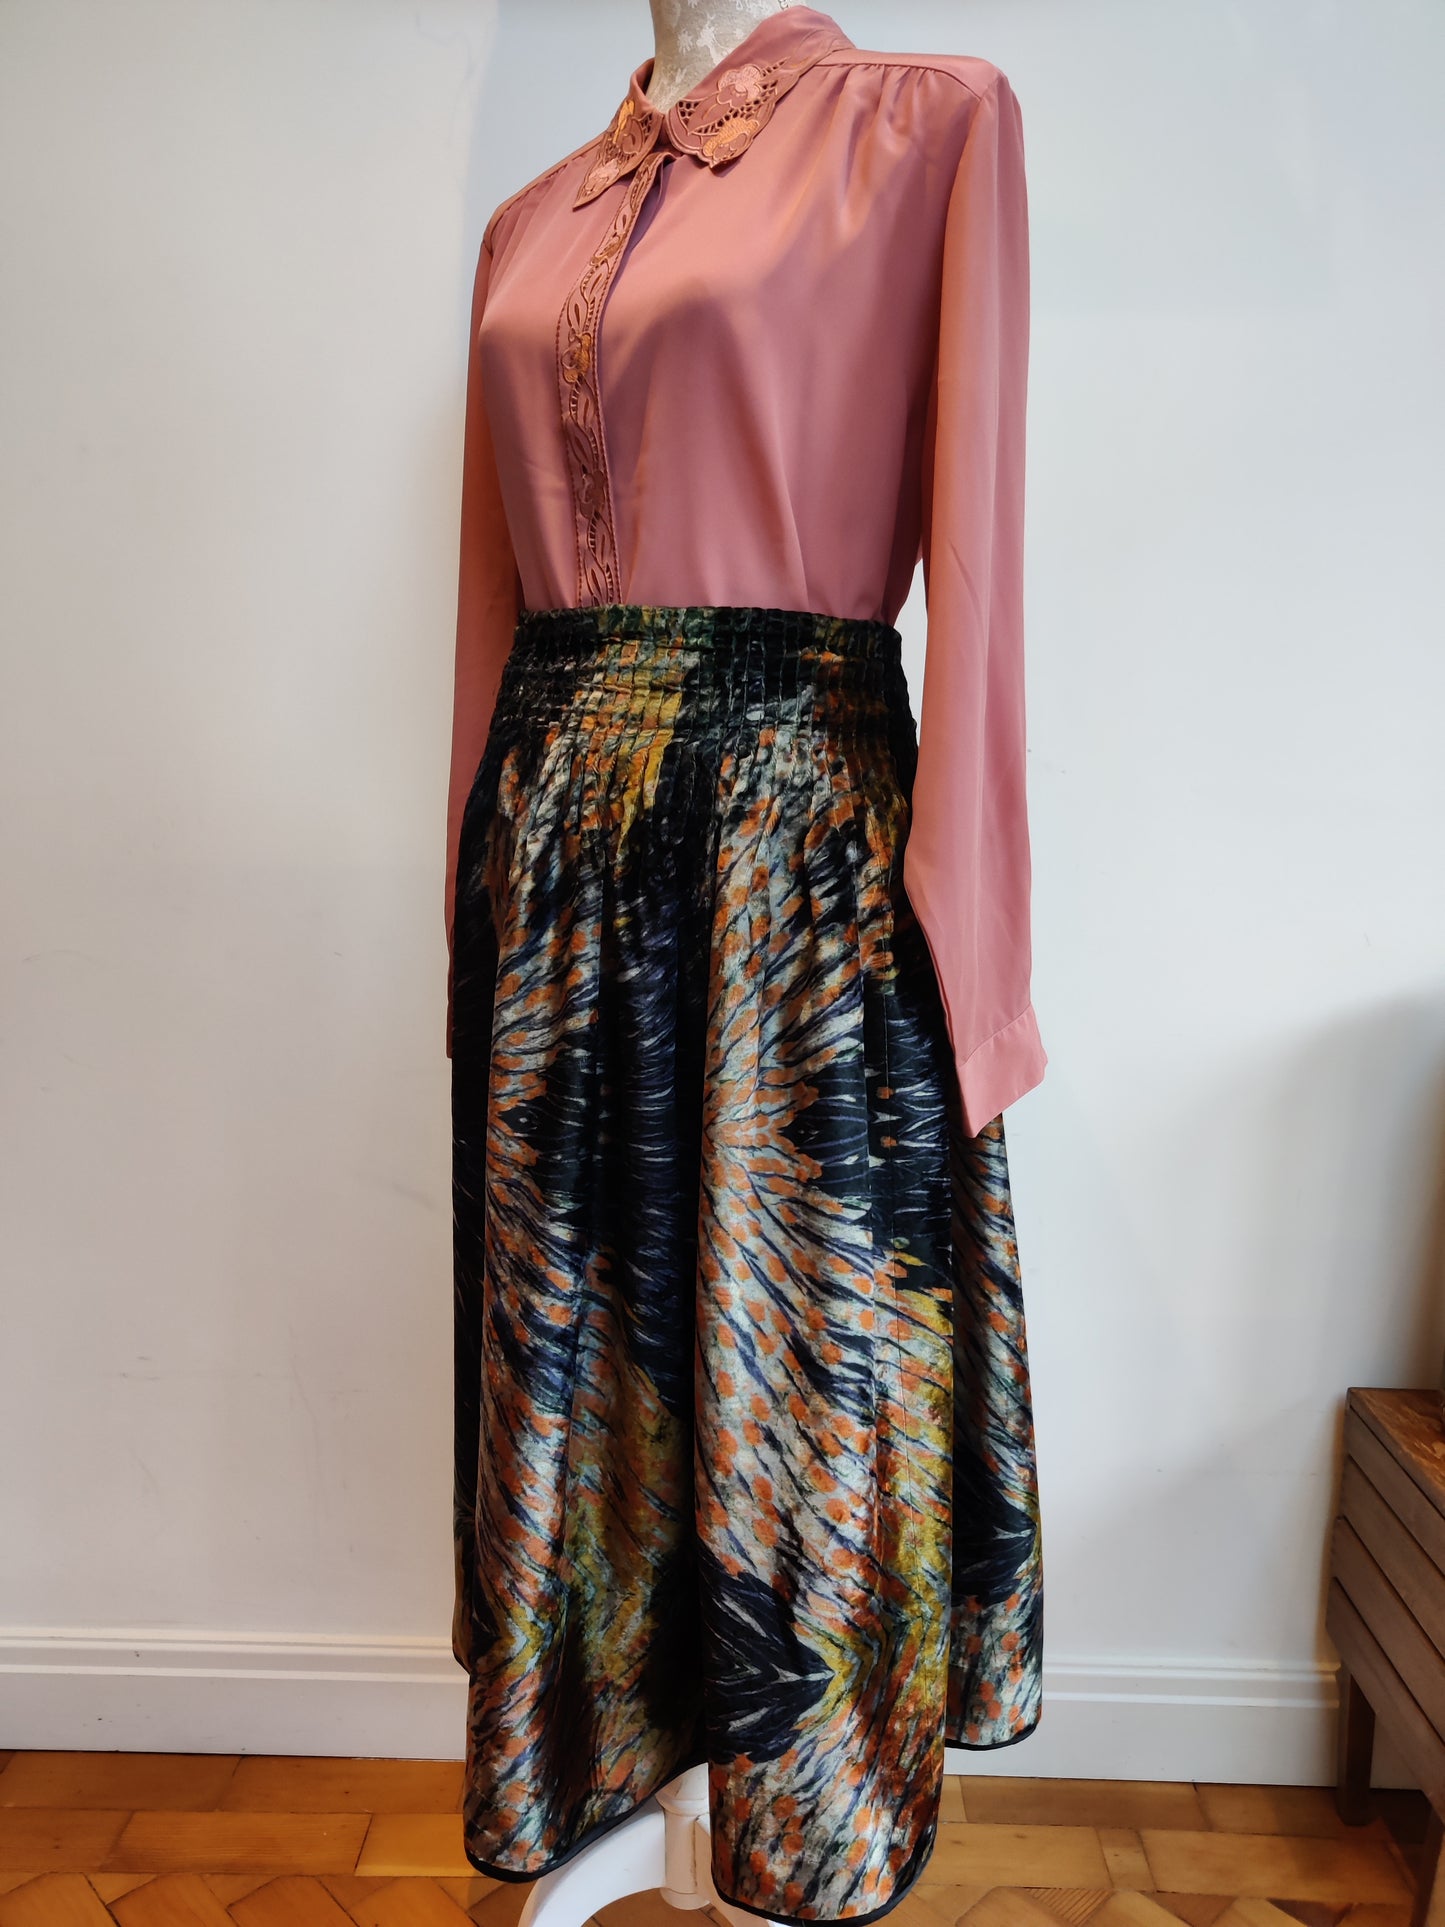 Phool velvet skirt size 18